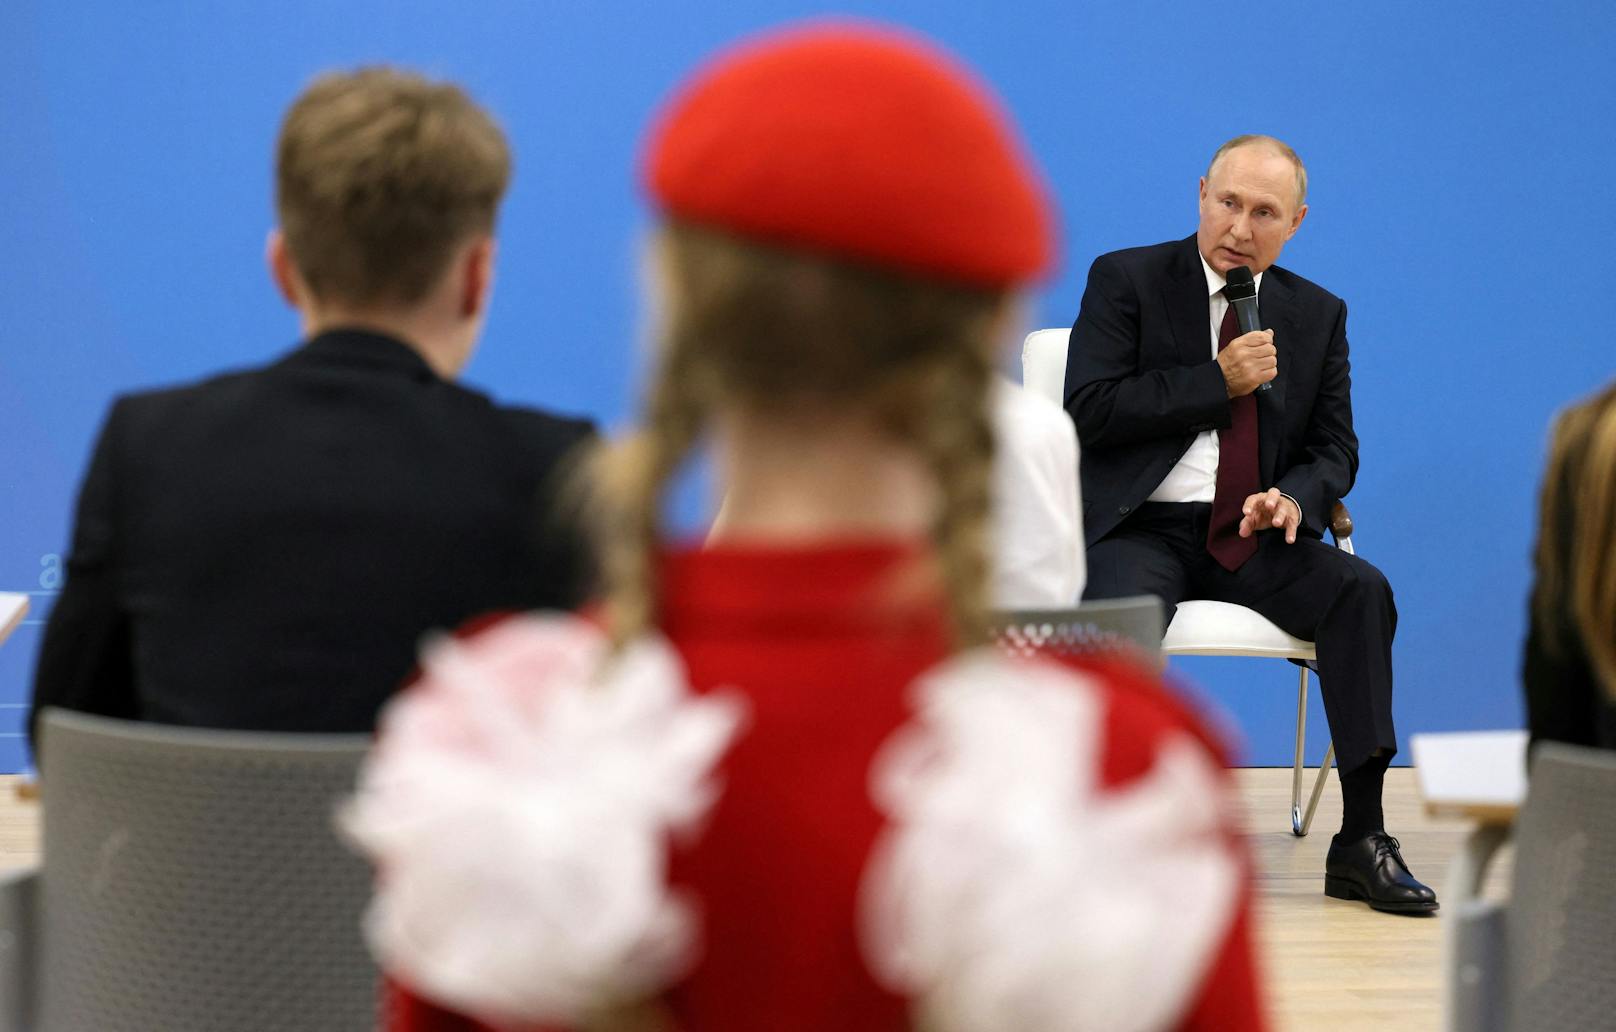 Wladimir Putin sprach mit Muster-Schülern über "wichtige Dinge". Britische Medien sprechen von "Gehirnwäsche."